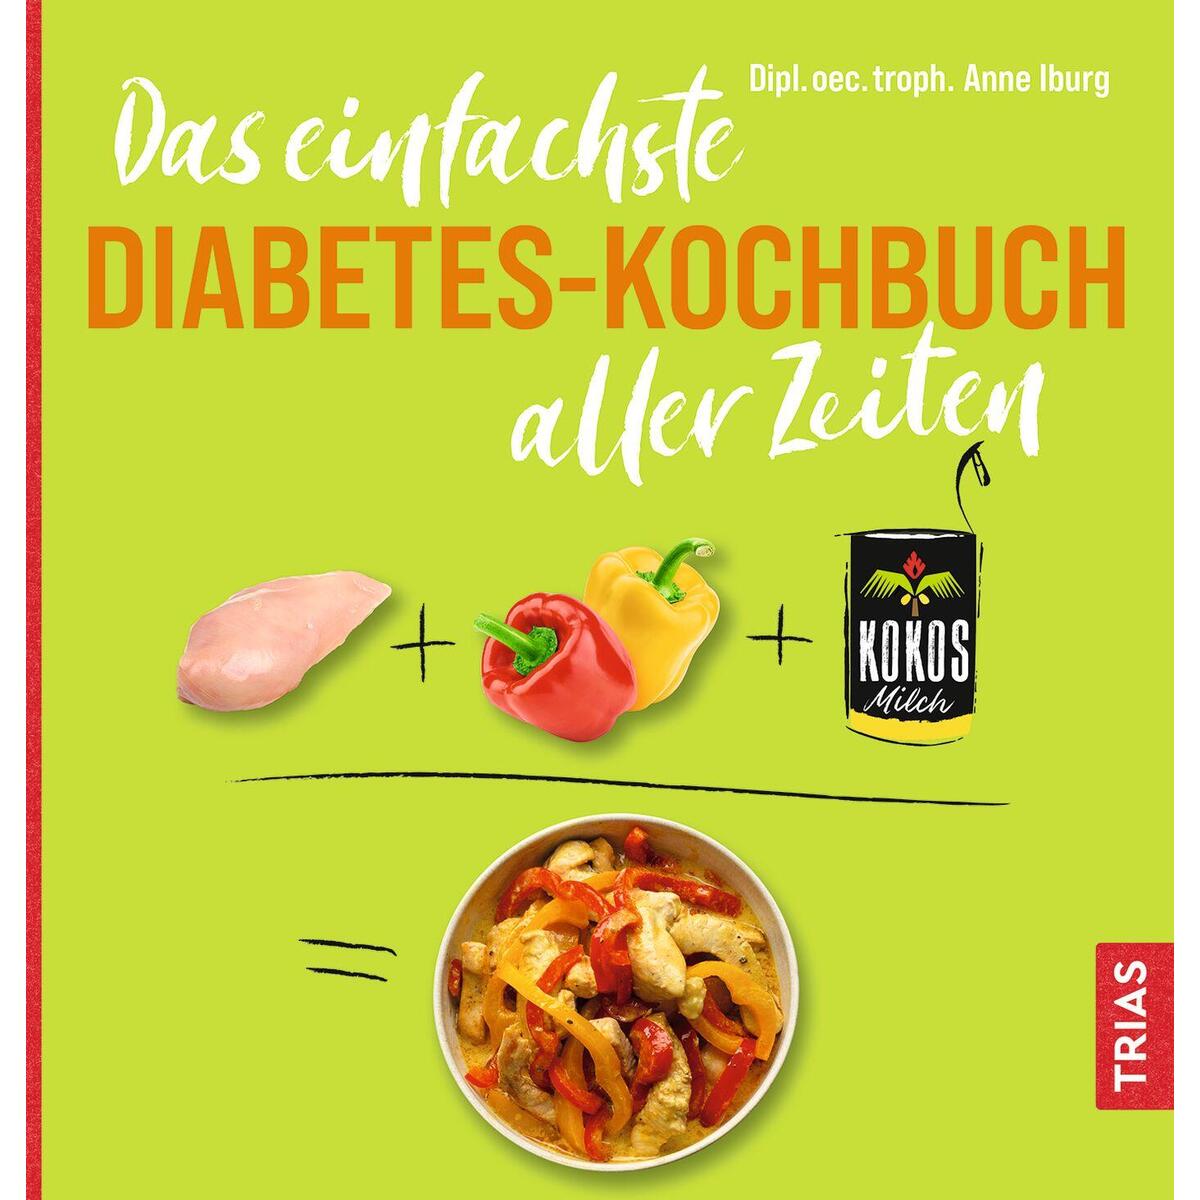 Das einfachste Diabetes-Kochbuch aller Zeiten von Trias